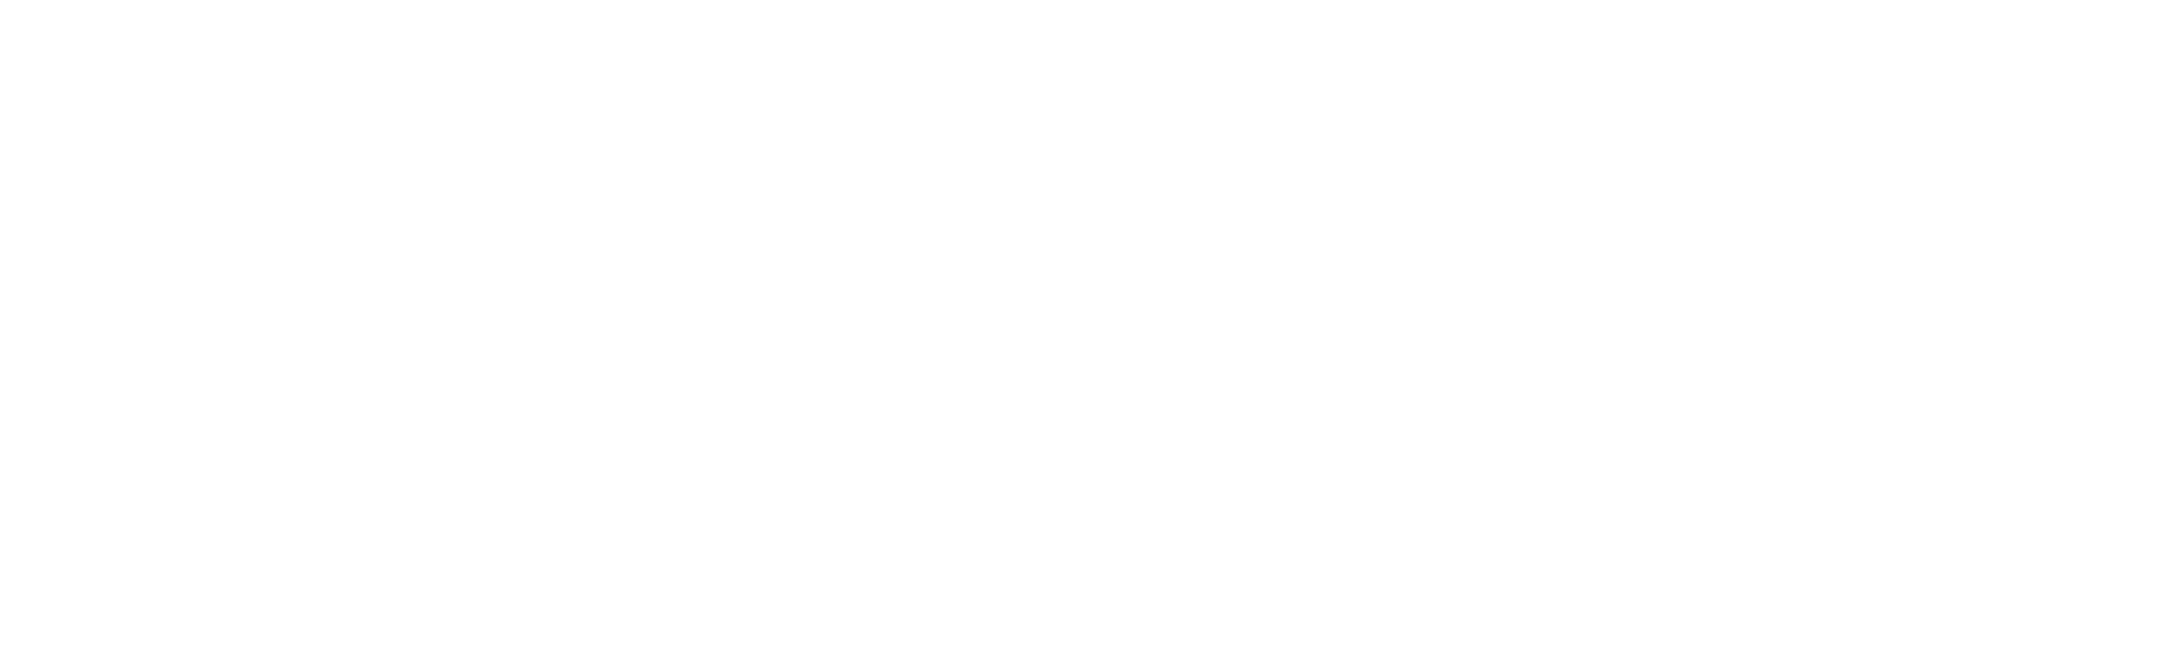 zemma wirta logo